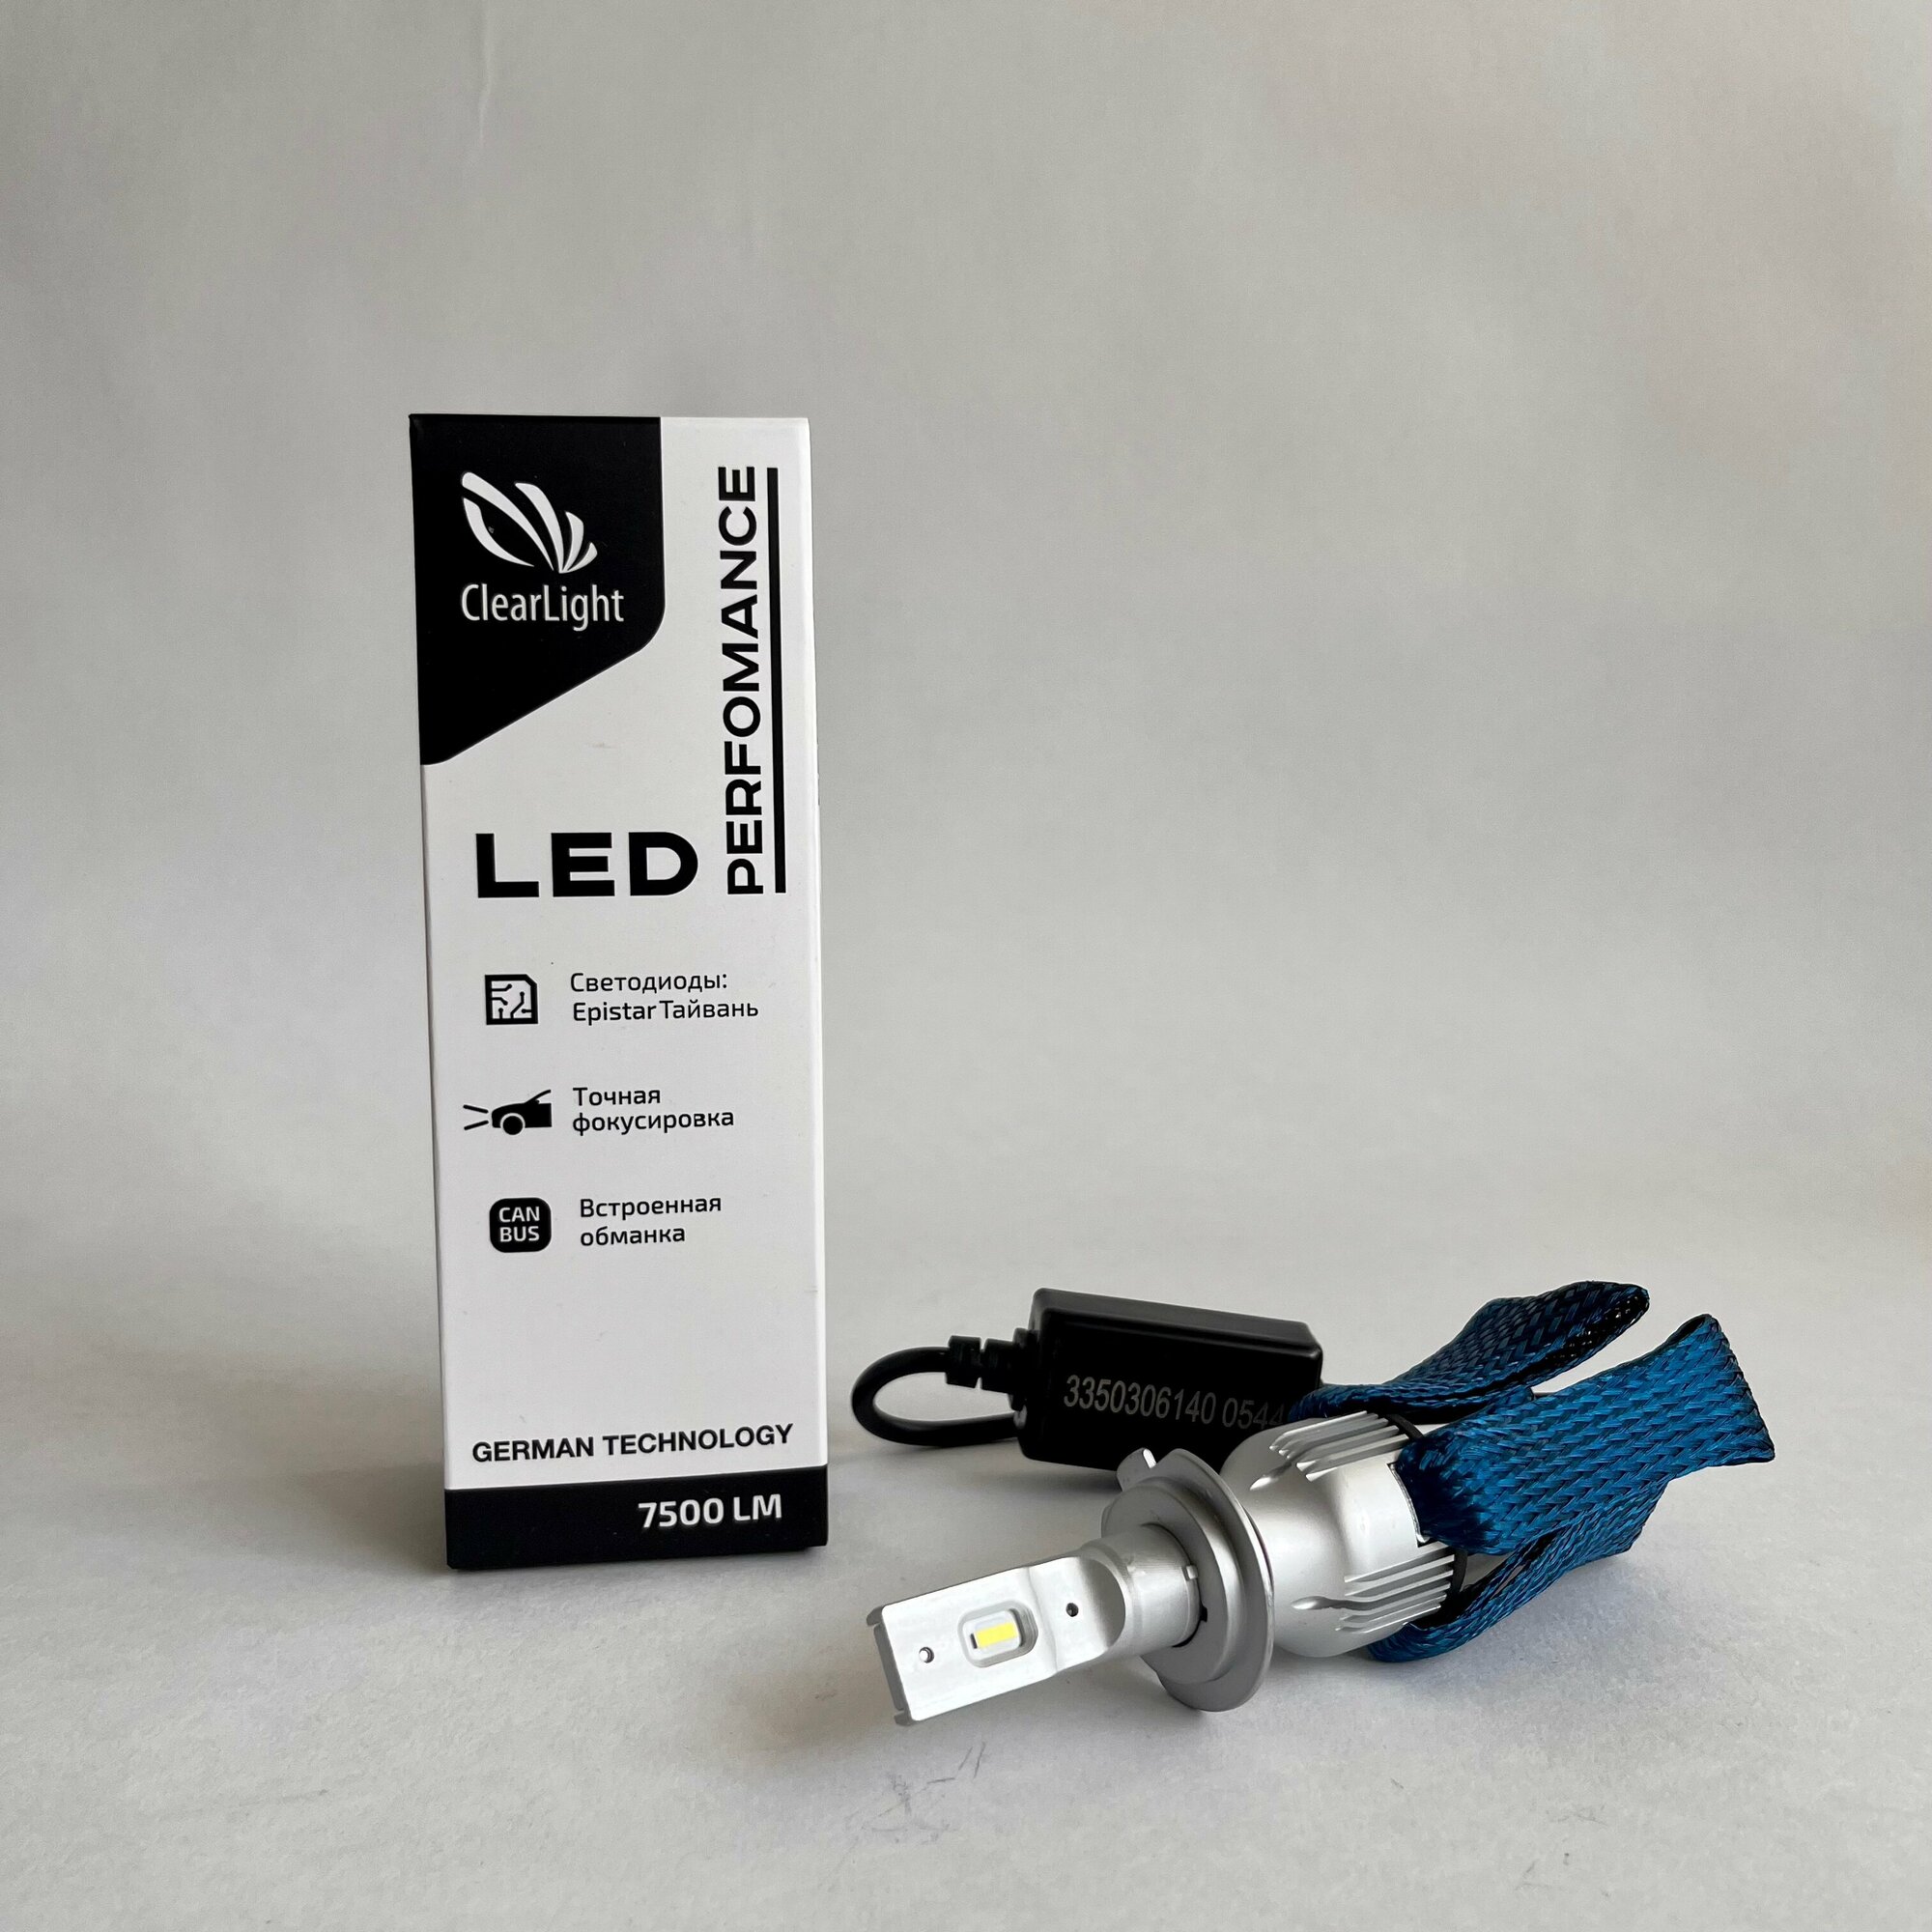 Лампа LED Clearlight Performance H7 7500 lm (1 шт) 6000K, CLPFMLEDH7 - фото №5